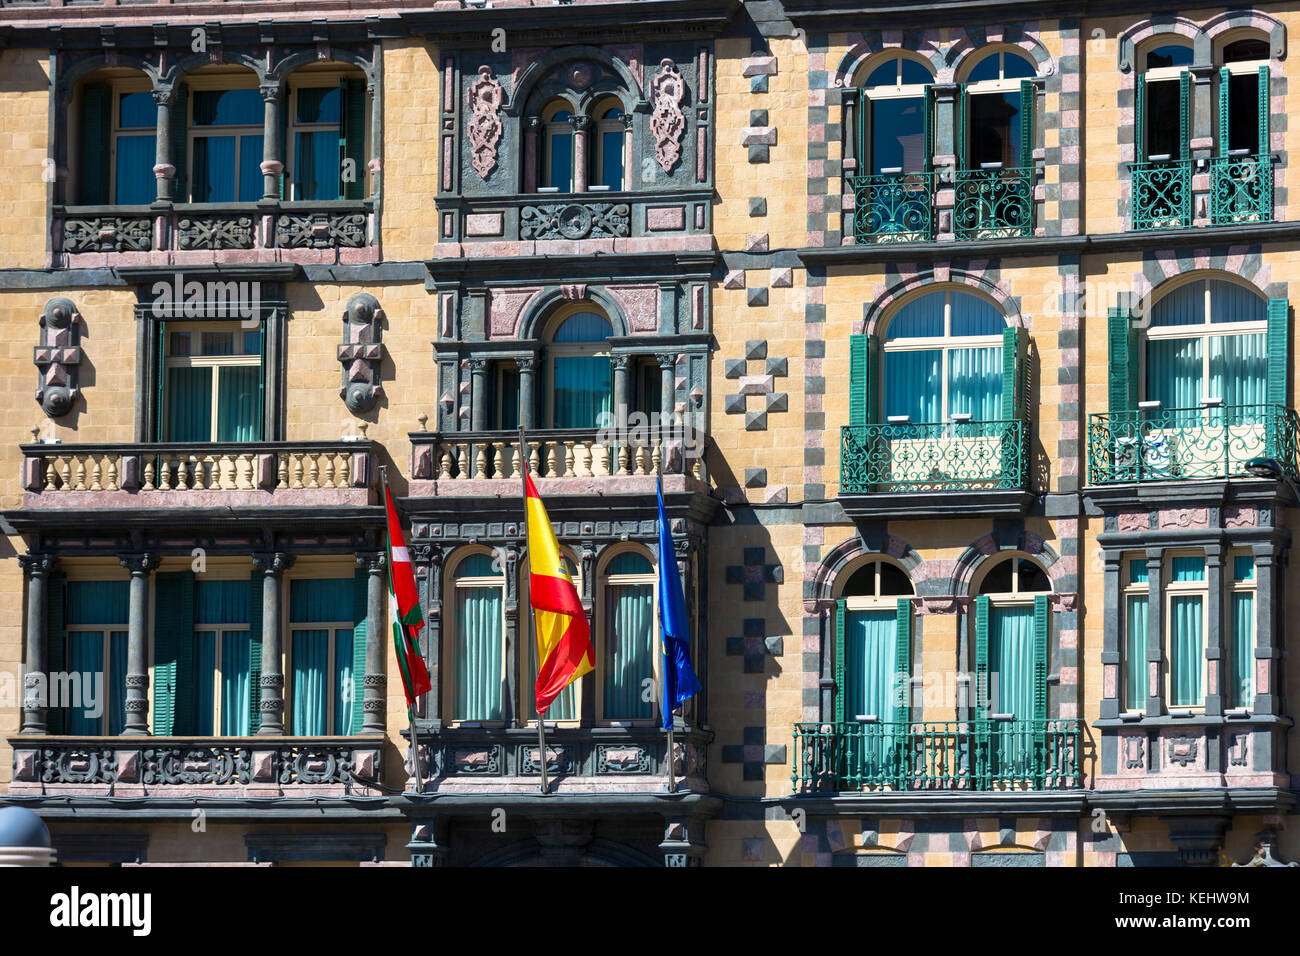 Baskische, spanische und EU-Flagge auf Delegation der Regierung in Bizkaia an der Plaza Moyua in Bilbao, Spanien Stockfoto